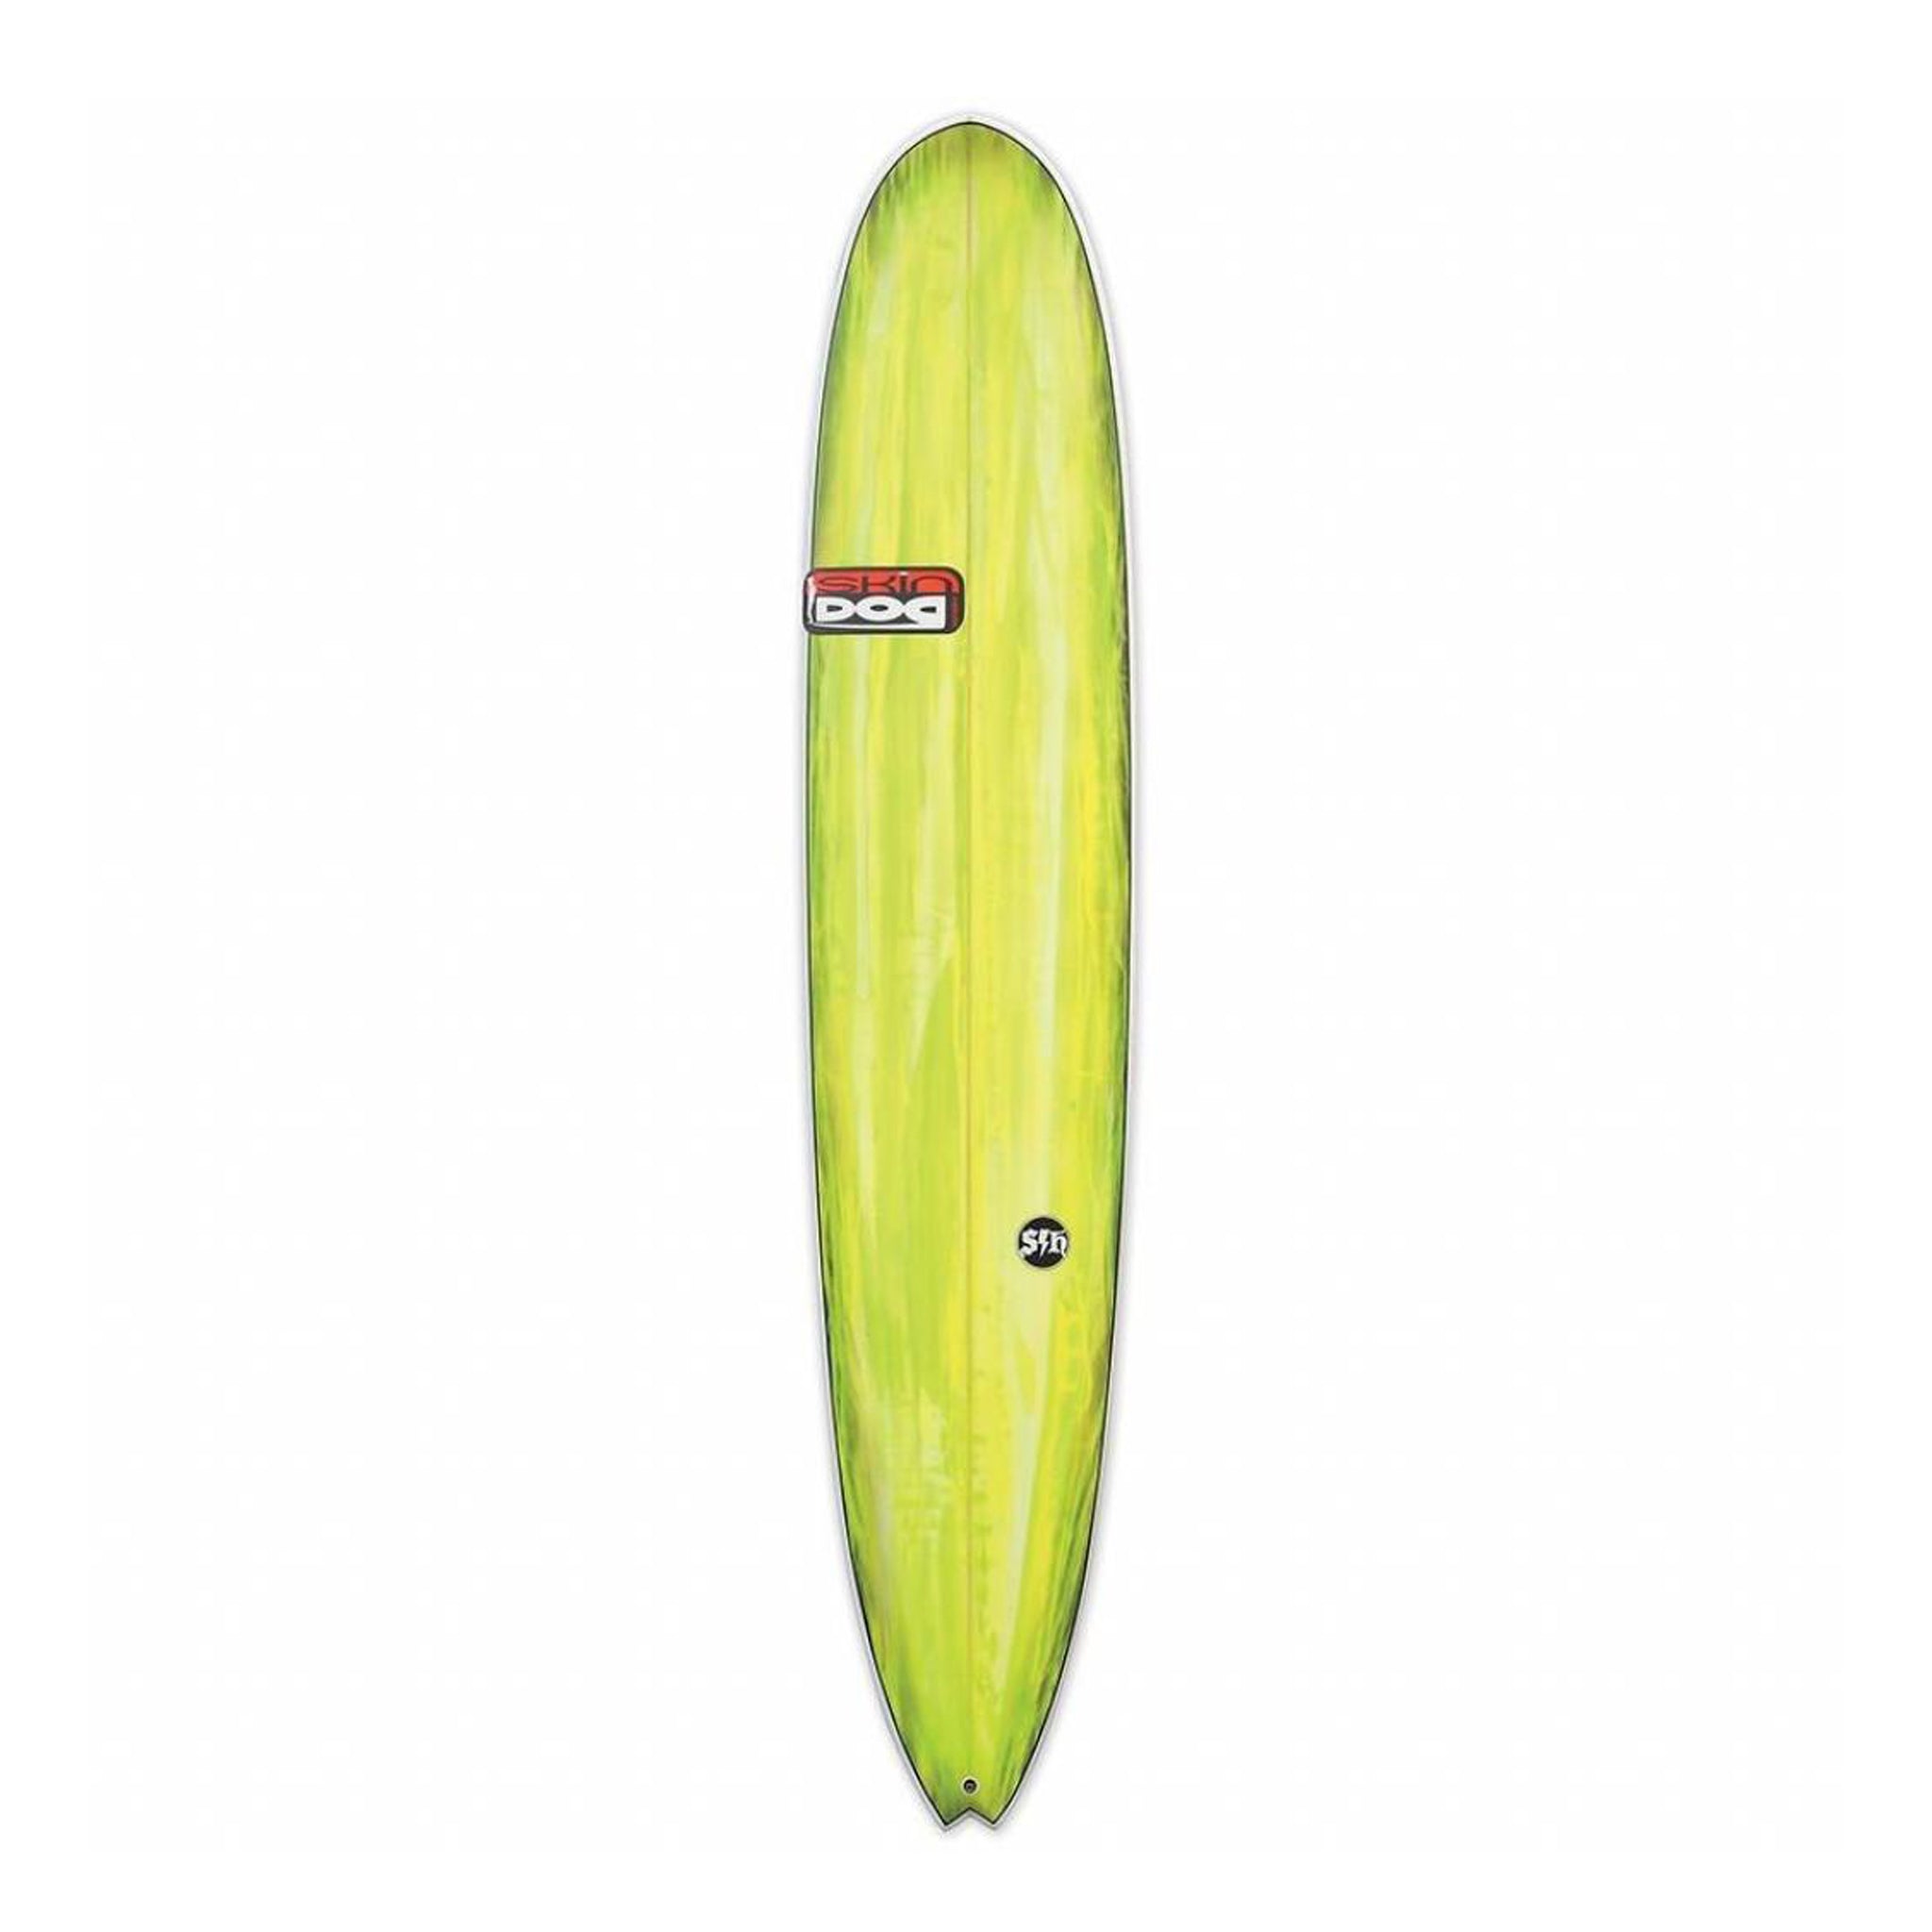 slabhunter-surf-board_acb33c4a-f3a4-4f5a-a74b-e4c2a675e3e4.jpg